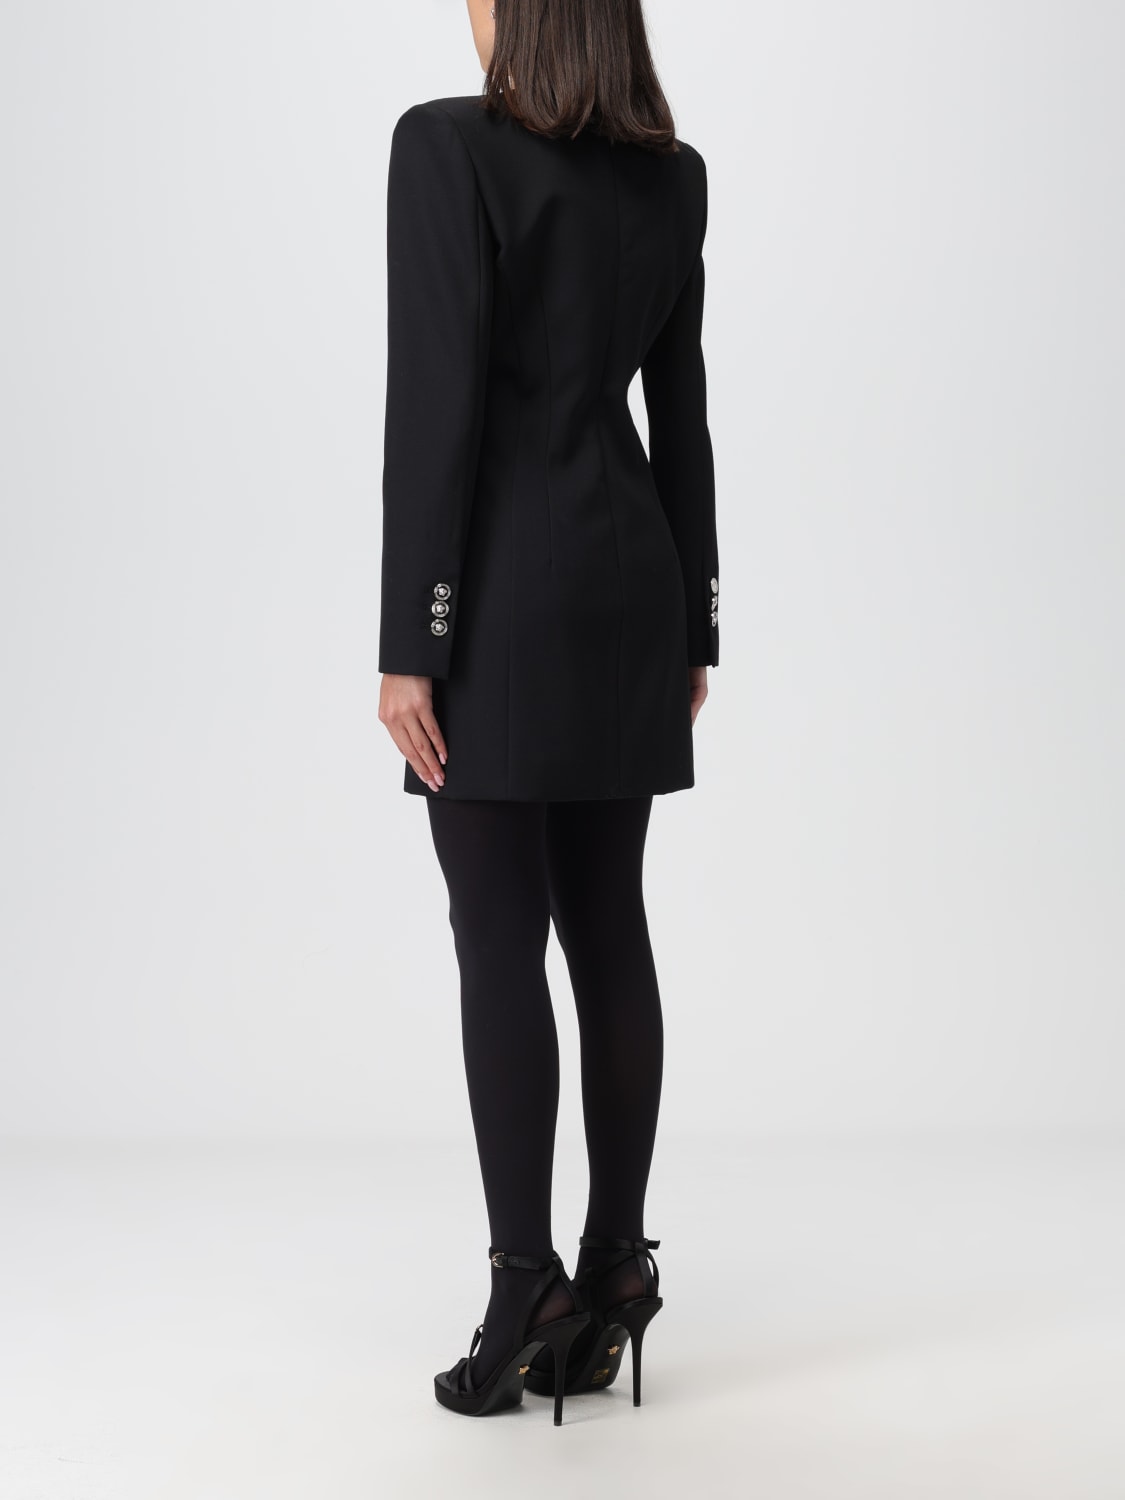 VERSACE: dress for women - Black  Versace dress 1012434 1A06750 online at